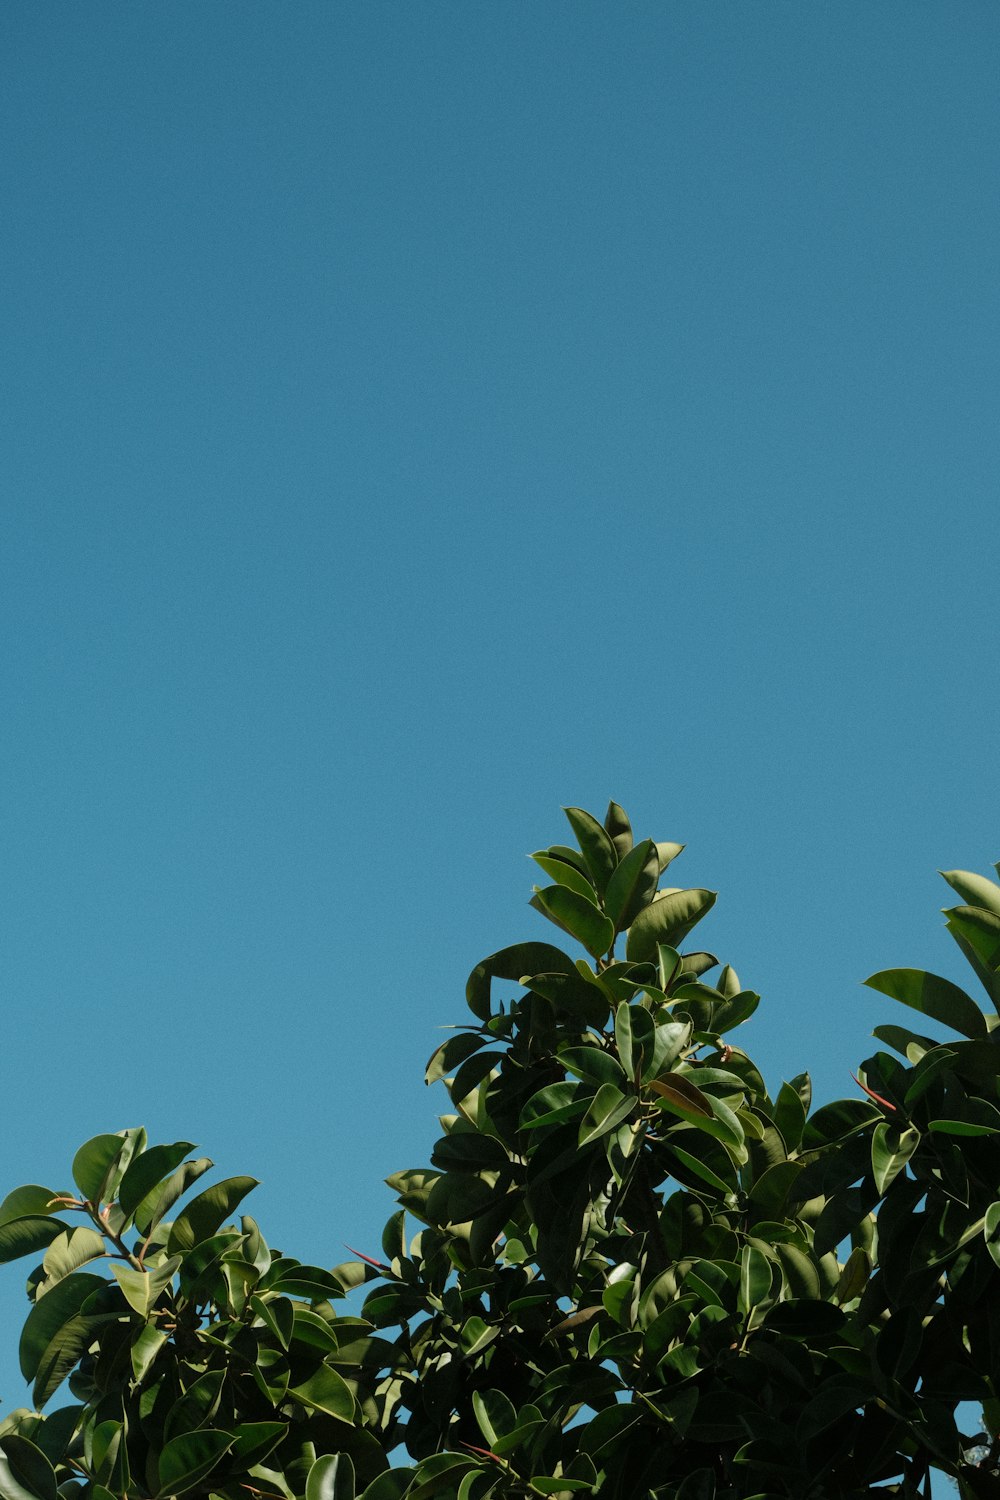 푸른 하늘을 배경으로 나무 위를 날아다니는 비행기